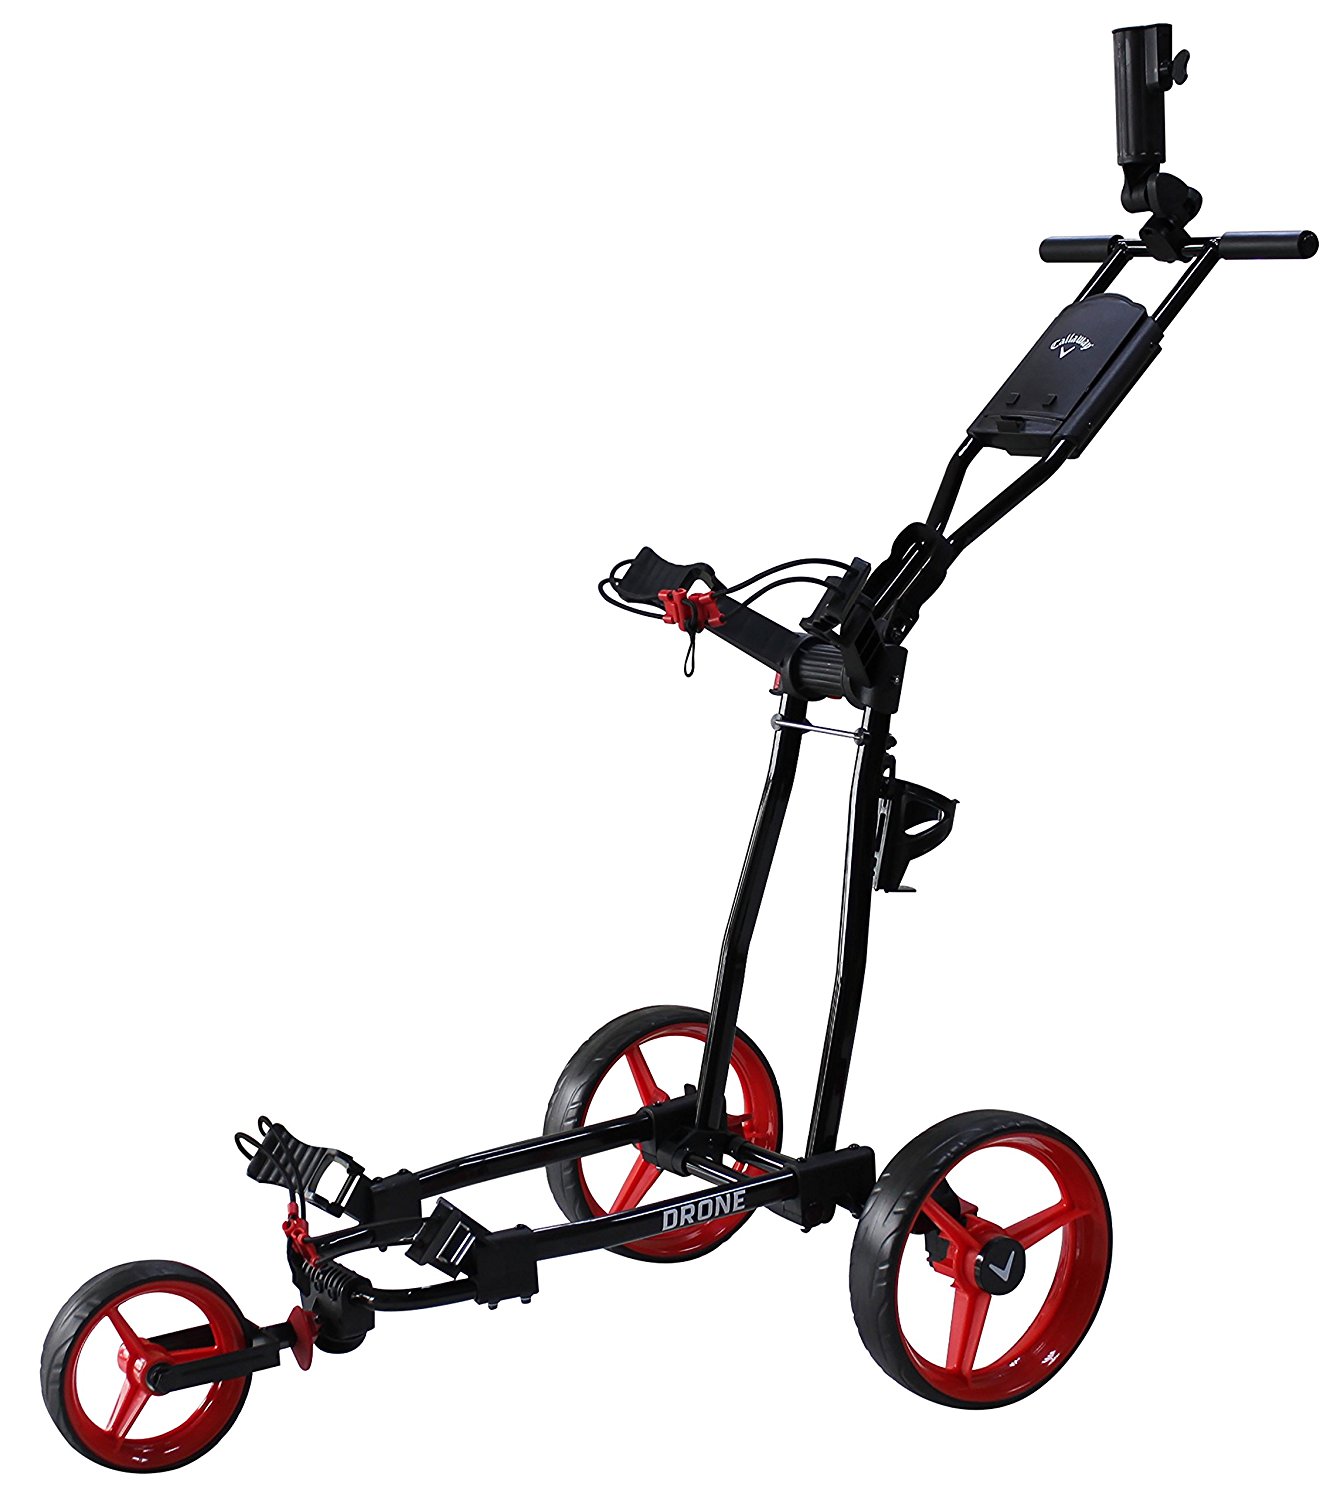 Callaway Drone 3 Wheel Golf Push Trolleys